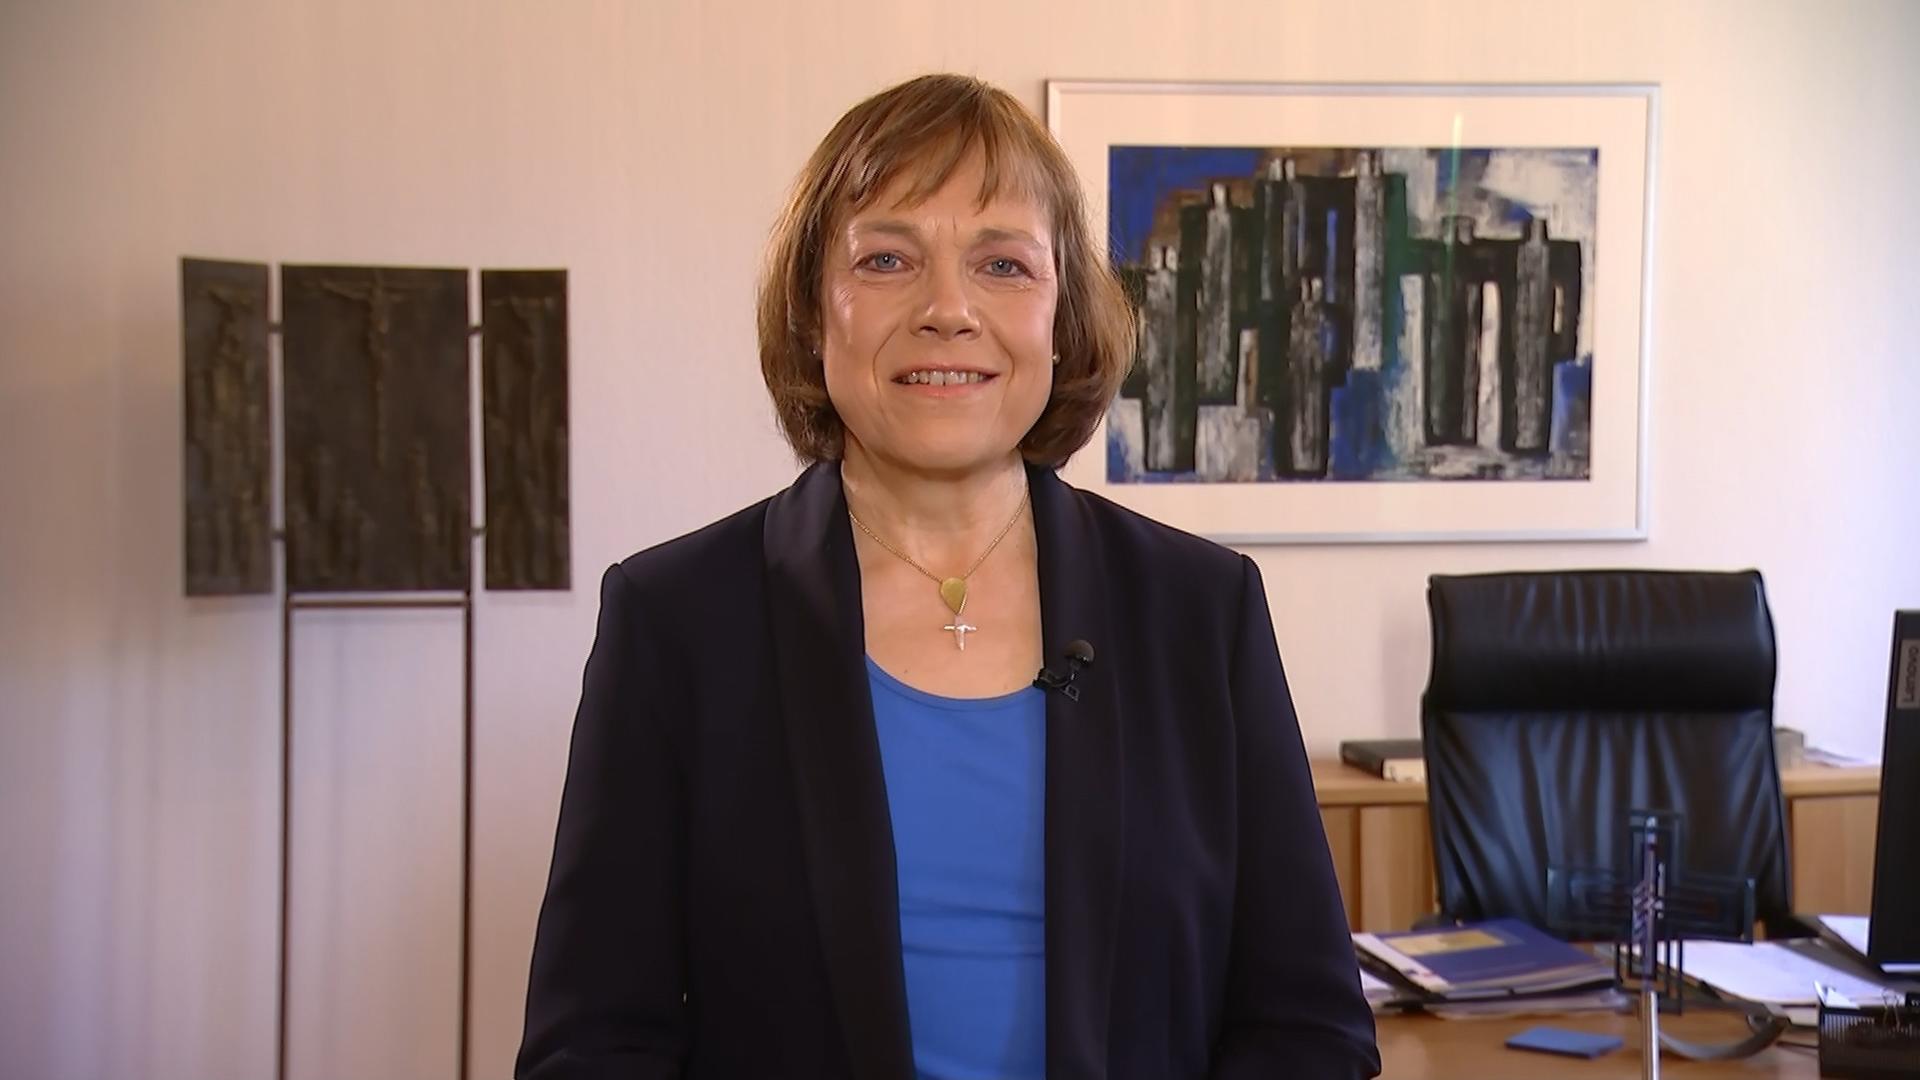 Annette Kurschus, Vorsitzende des Rates der Evangelischen Kirche in Deutschland